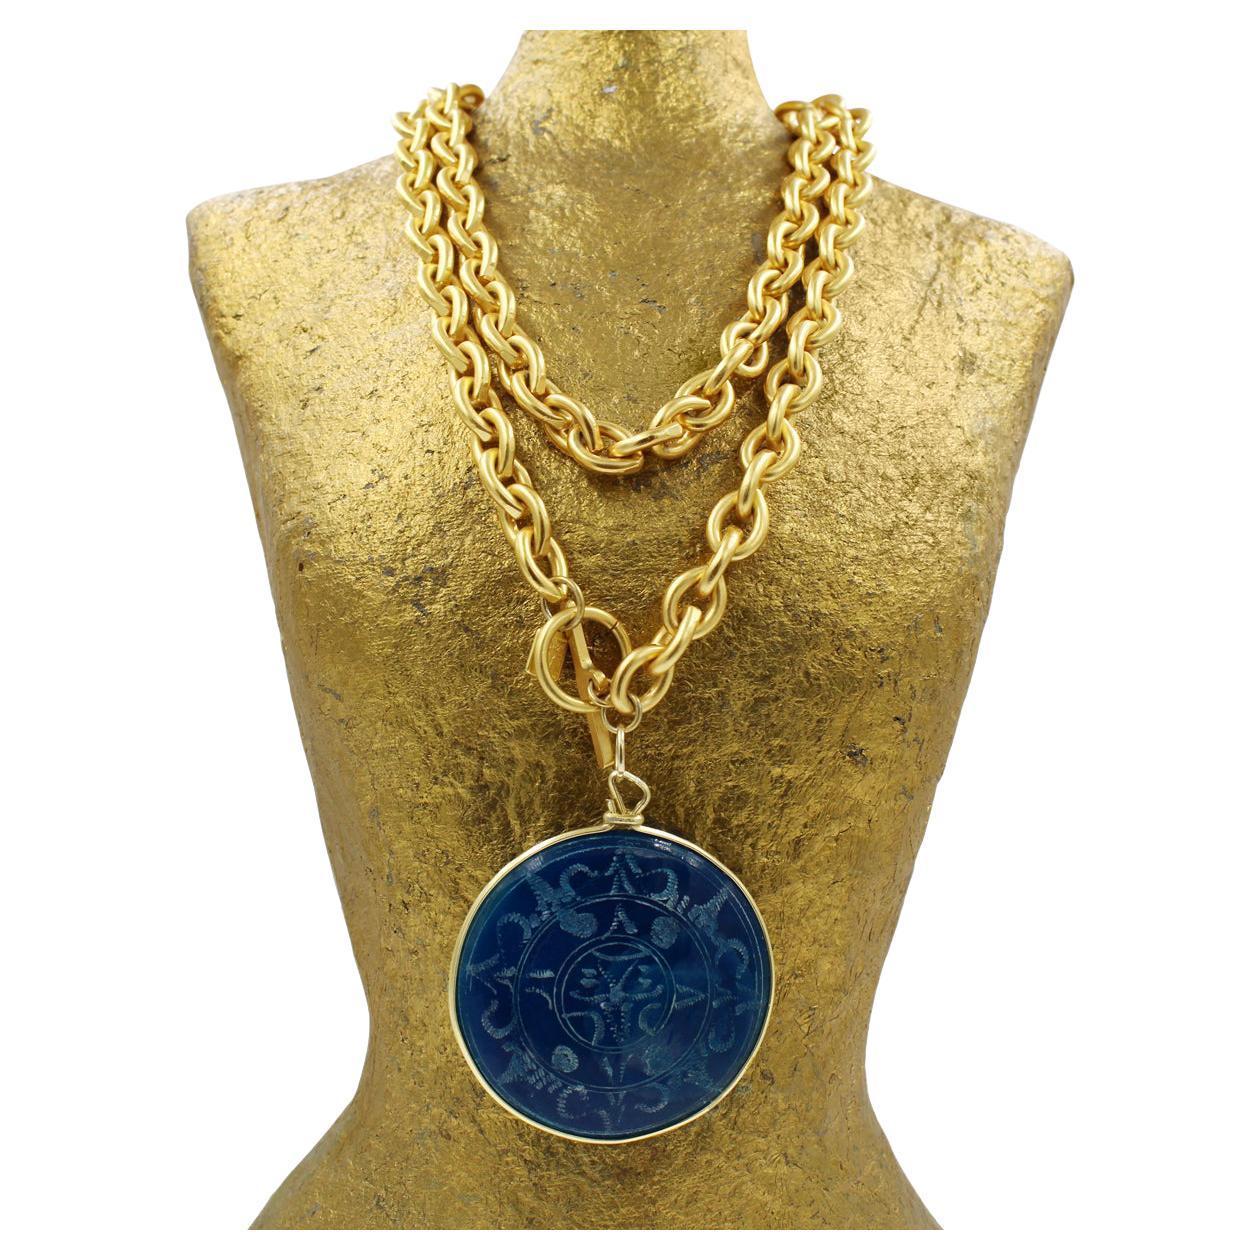 Vintage Anne Klein collier à bascule avec disque bleu.   Peut être porté en double autour du cou comme indiqué. Il s'agit d'une chaîne à maillons en or mat avec un grand disque rond bleu. Le disque a un côté mat et un côté avec des gravures bleues